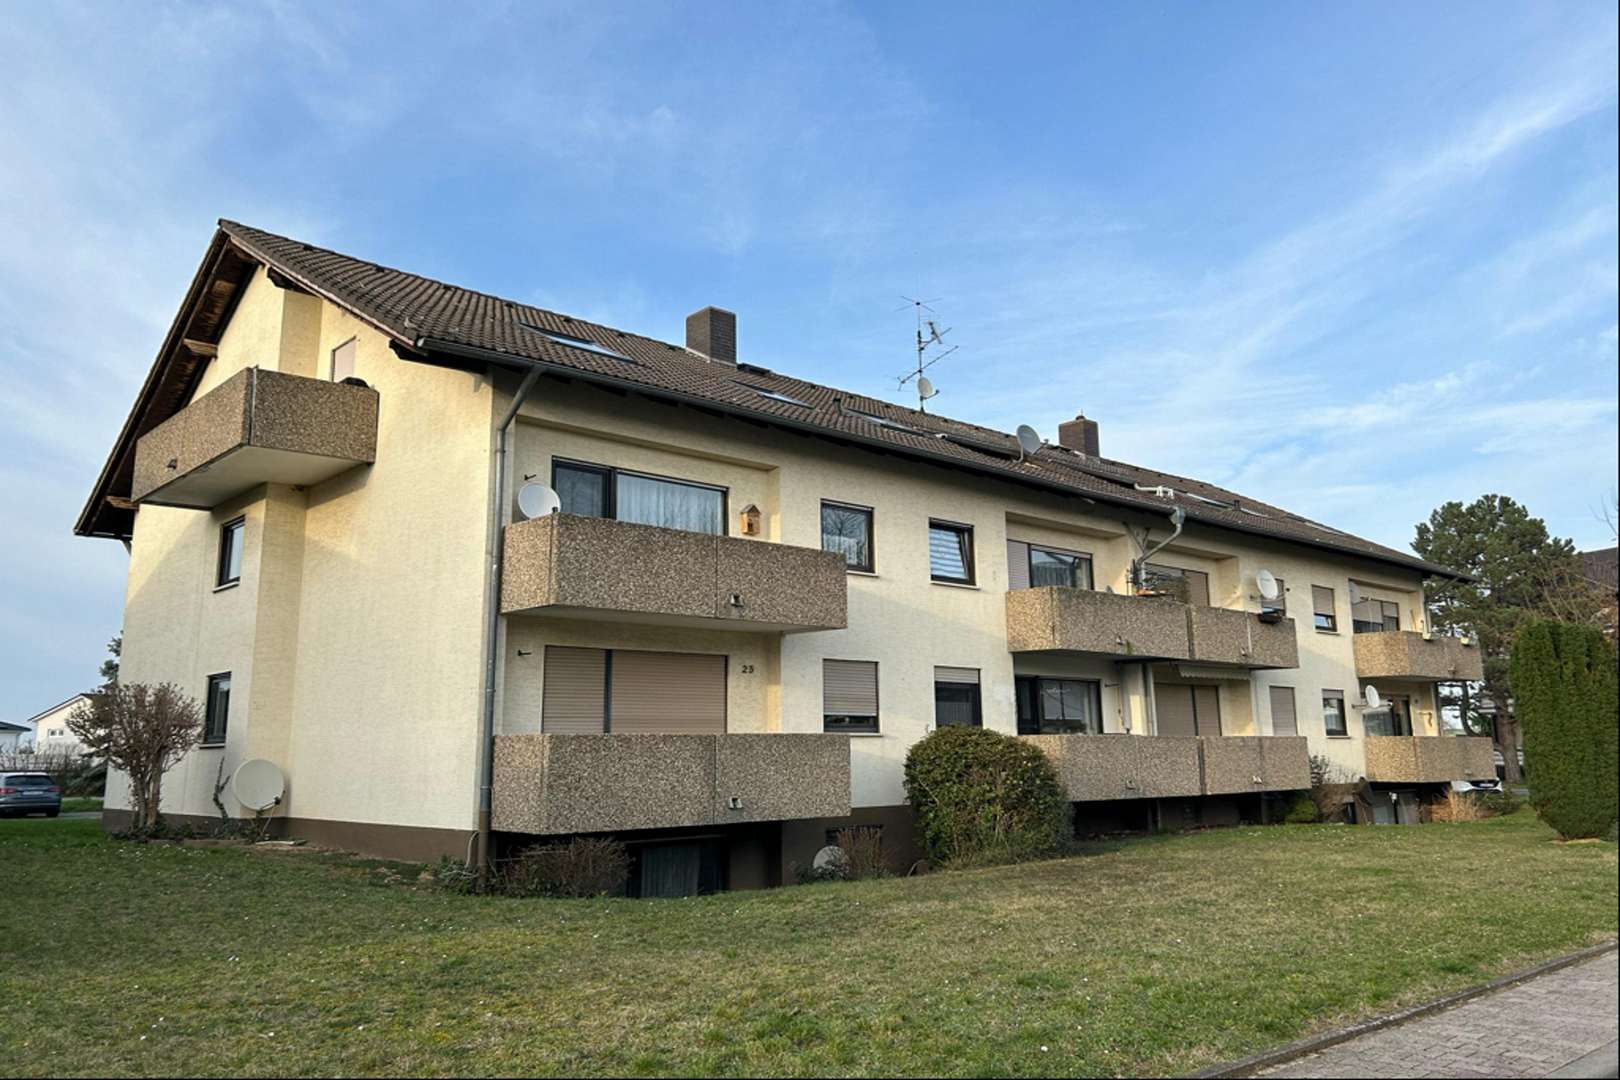 Hausansicht - Dachgeschosswohnung in 55597 Wöllstein mit 55m² kaufen